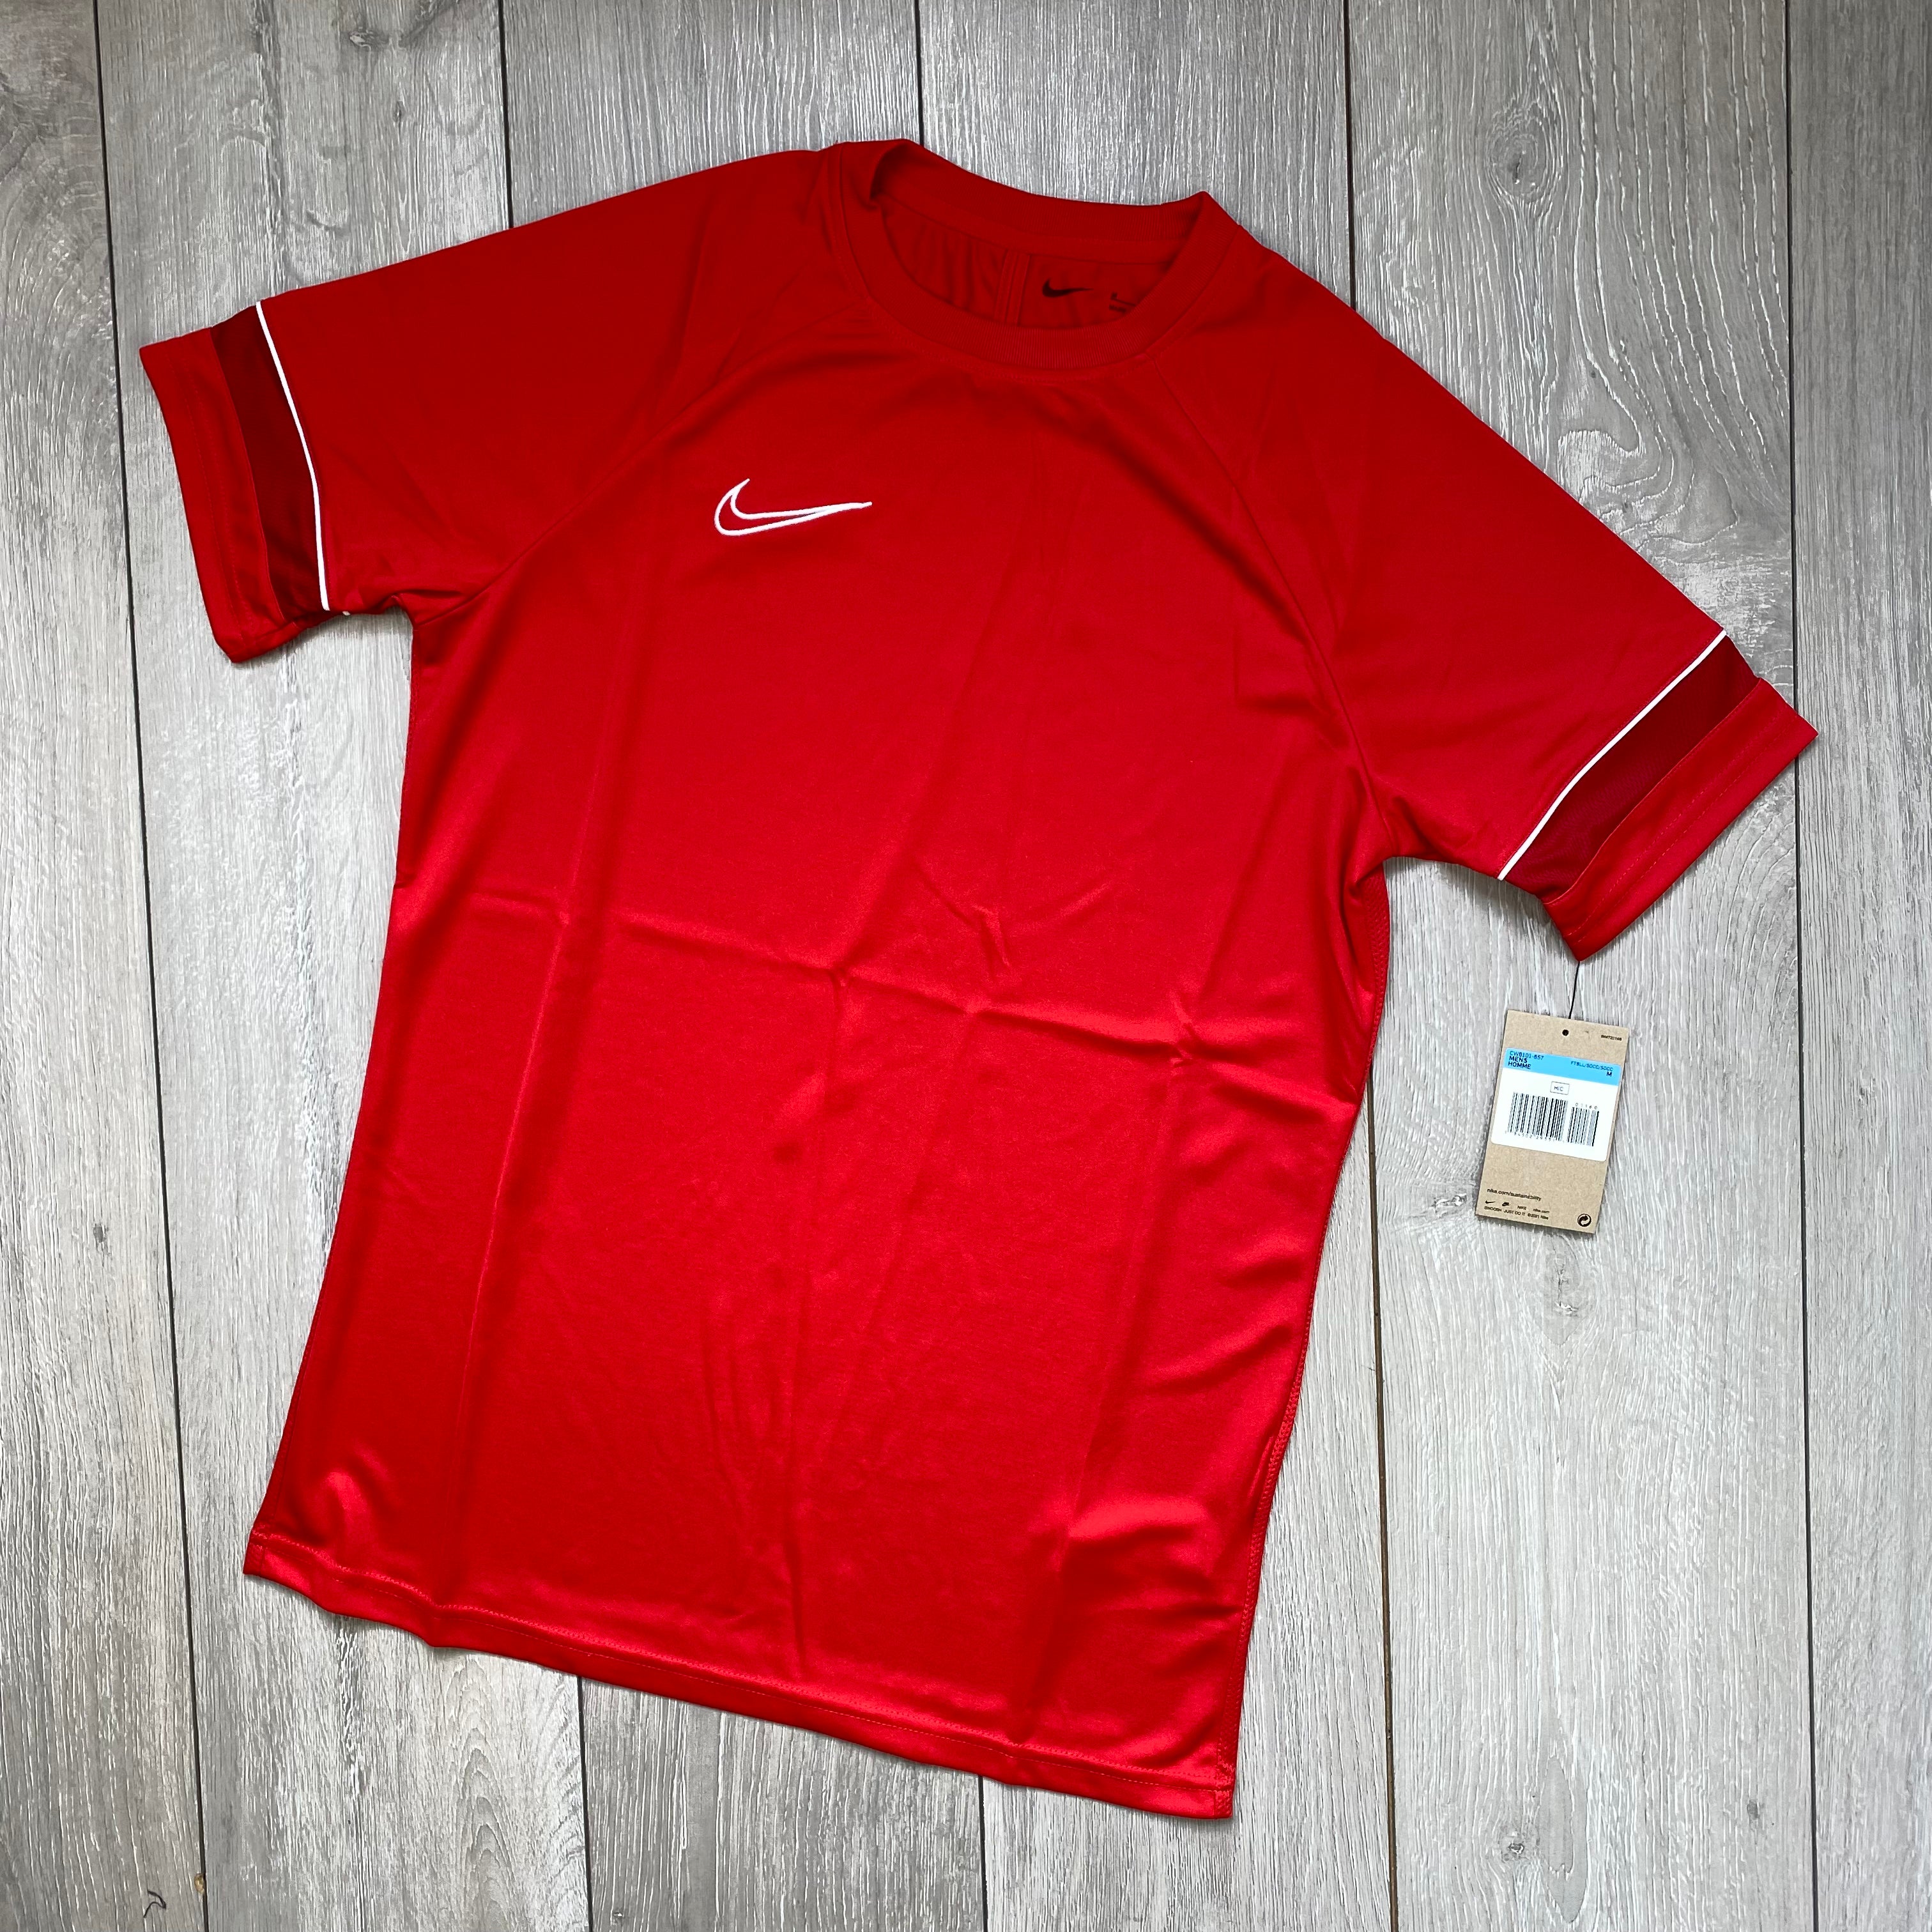 Nike Dri-Fit T-Shirt - Red